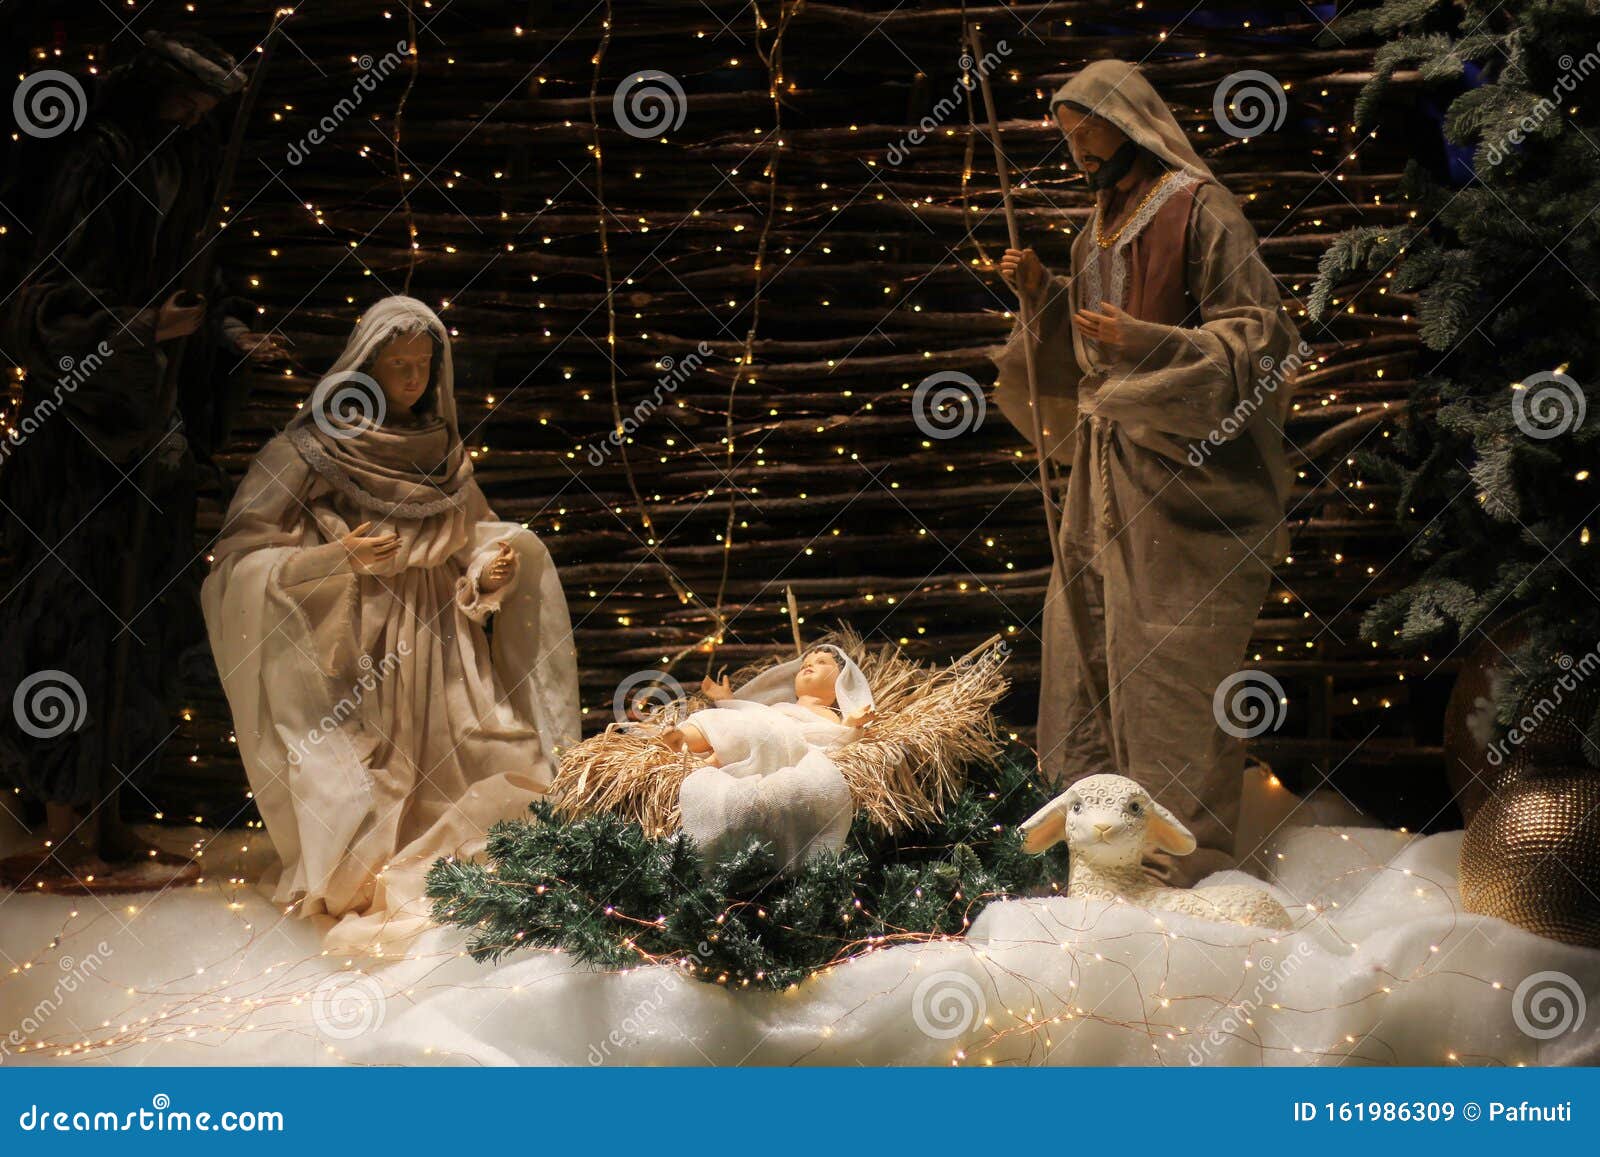 玛丽和约瑟夫在发光的马槽里抚摸婴儿耶稣照片摄影图片_ID:405805521-Veer图库